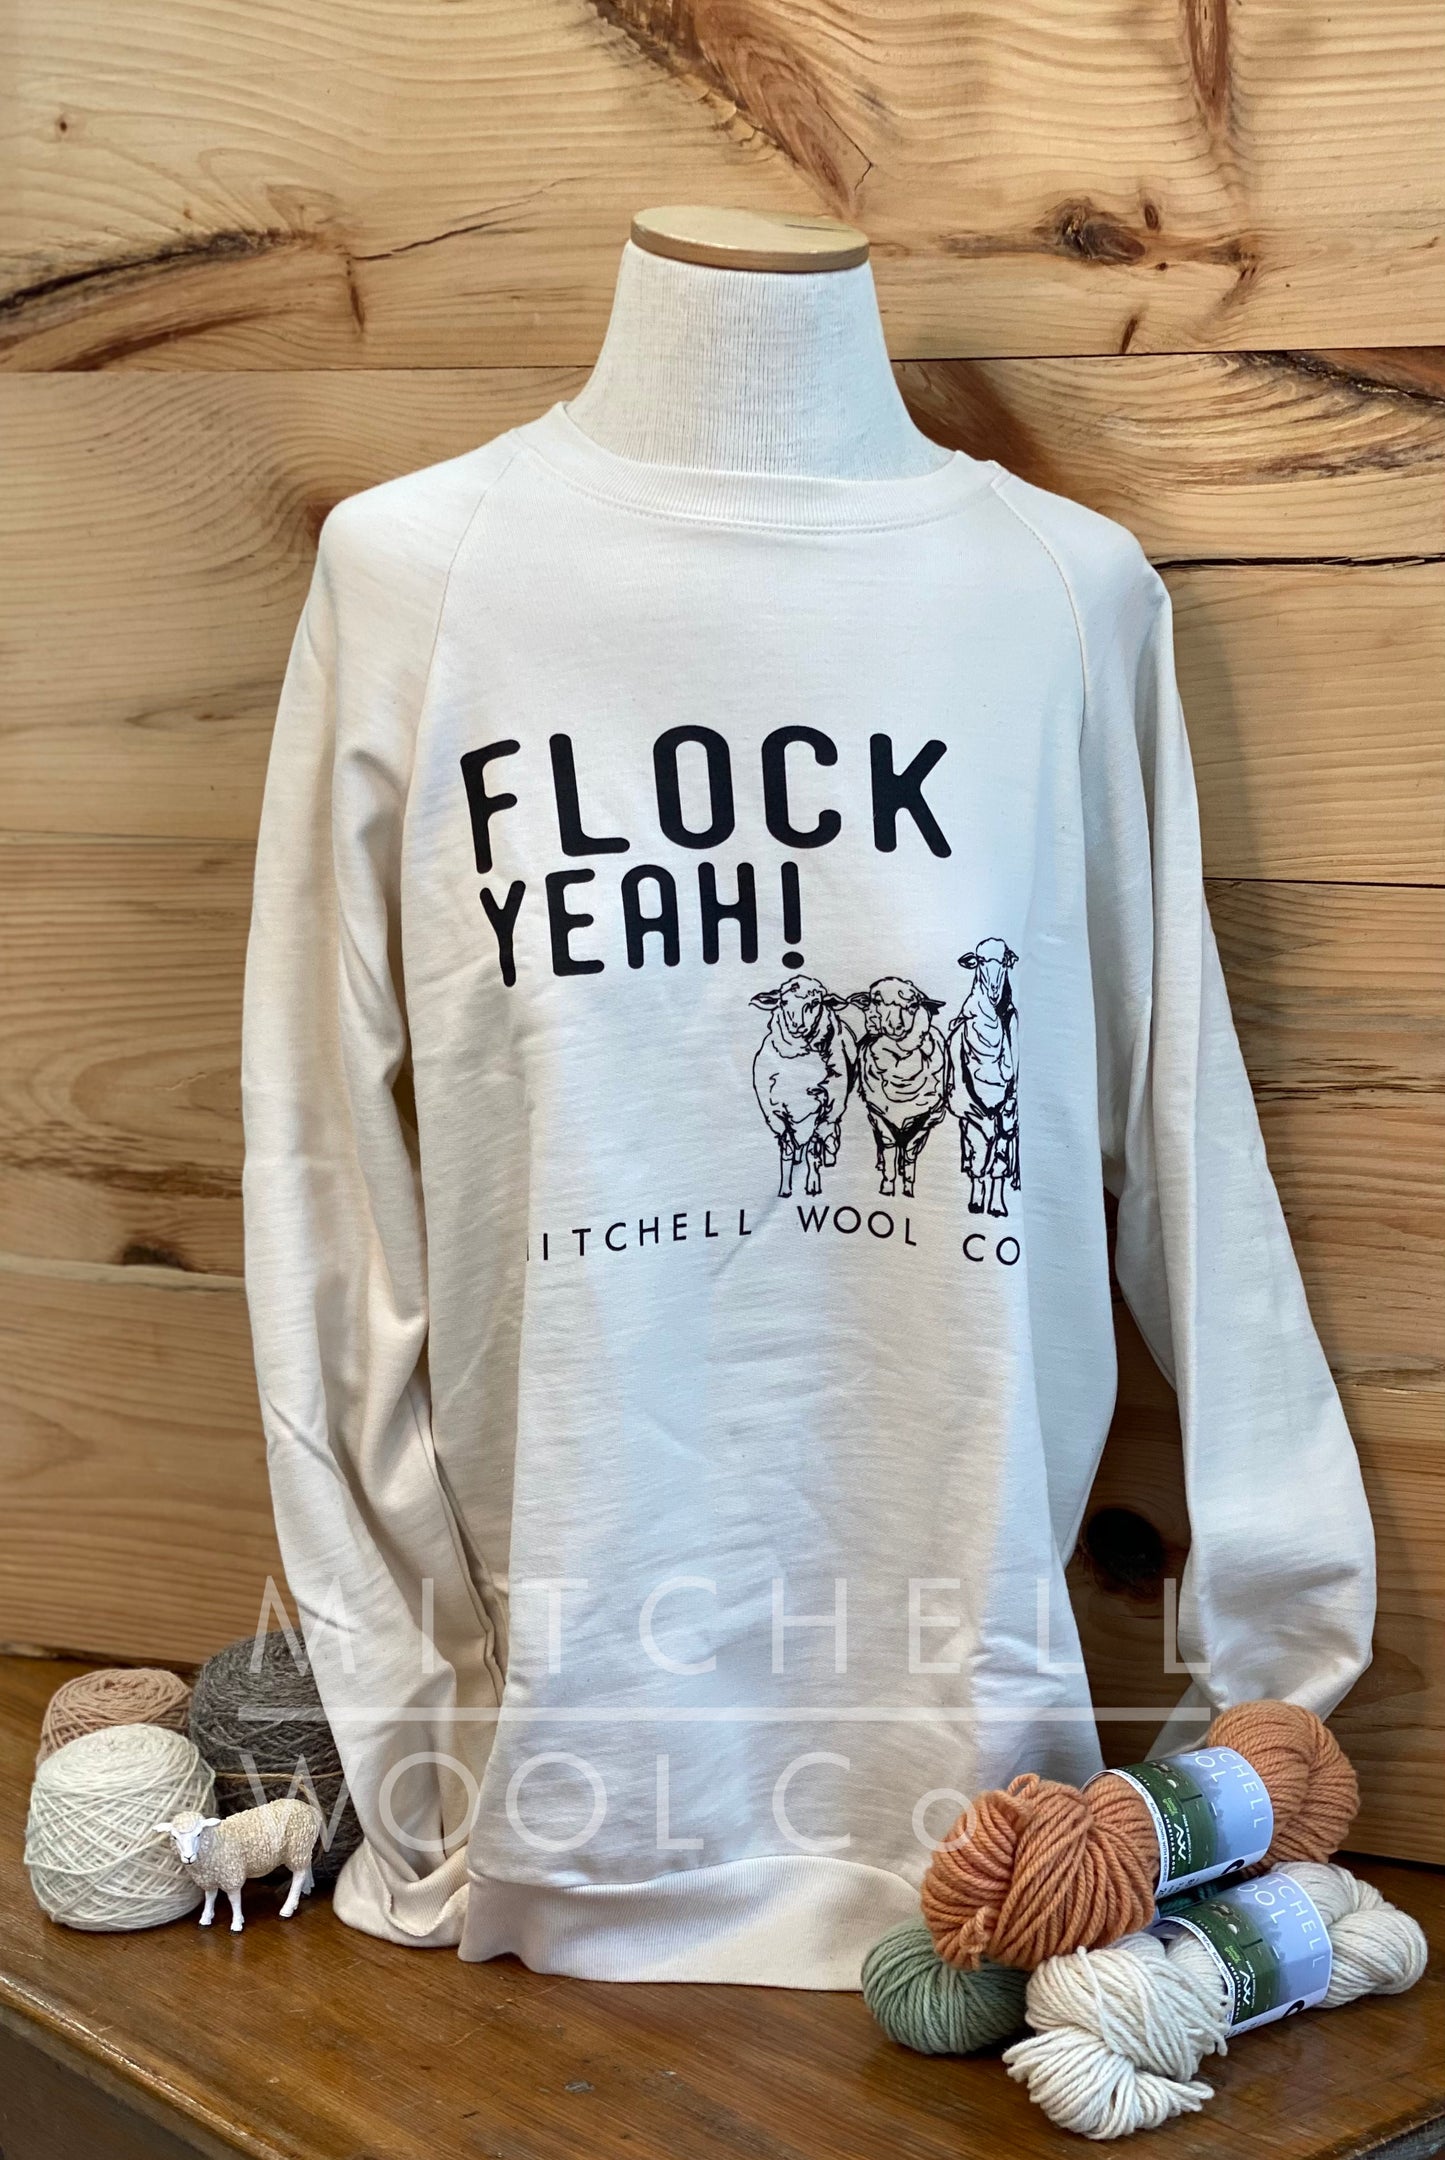 FLOCK YEAH! - Organic Cotton Sweatshirt